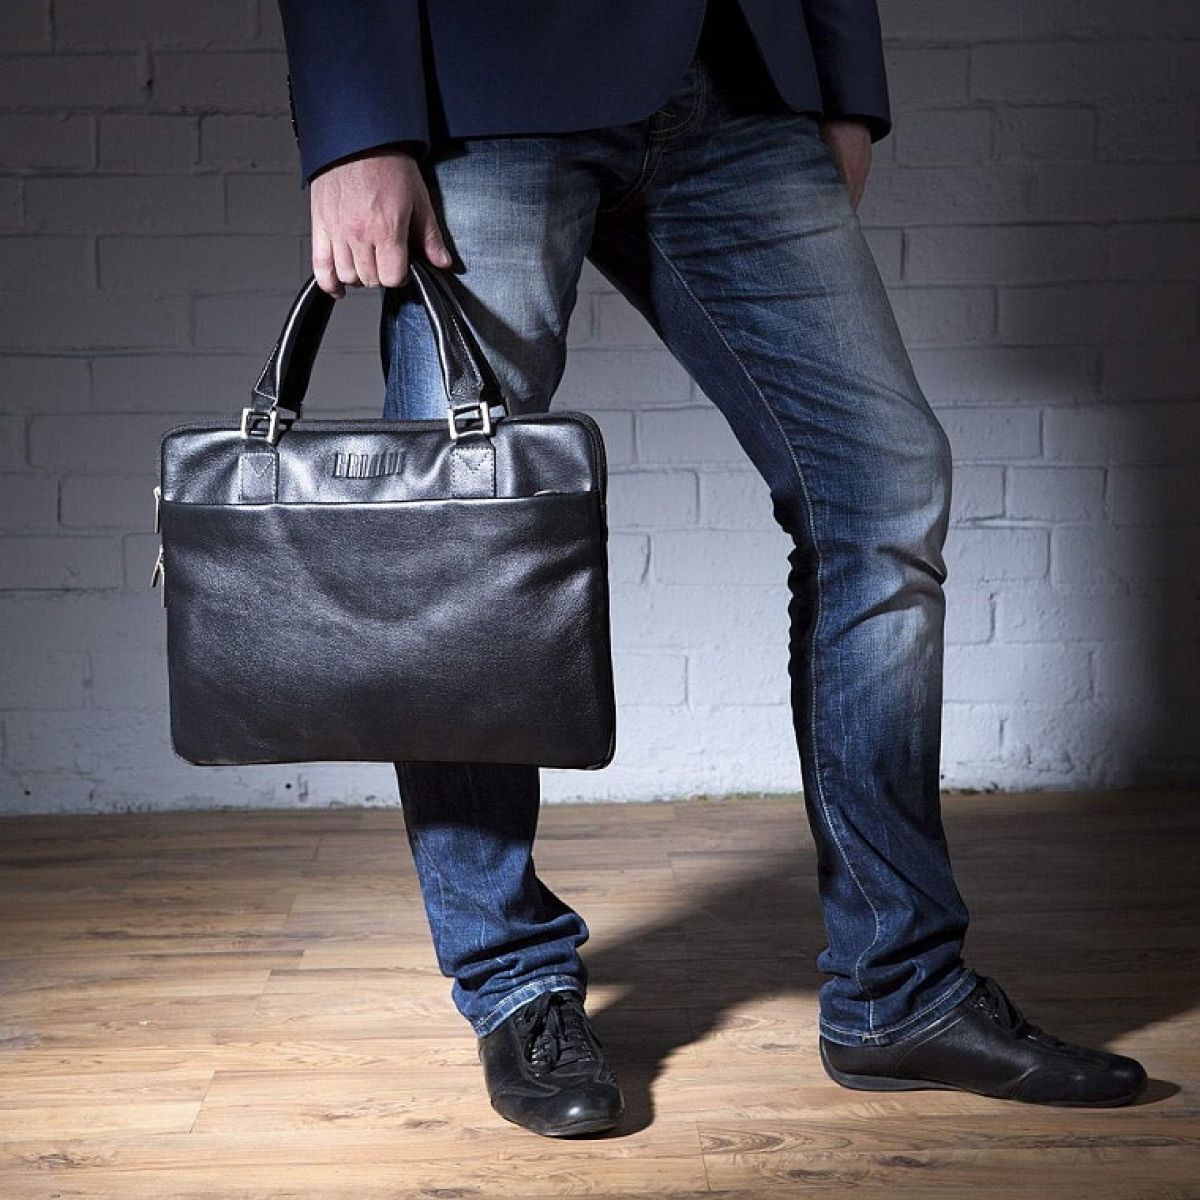 Топ мужских брендовых сумок: обзор и рекомендации